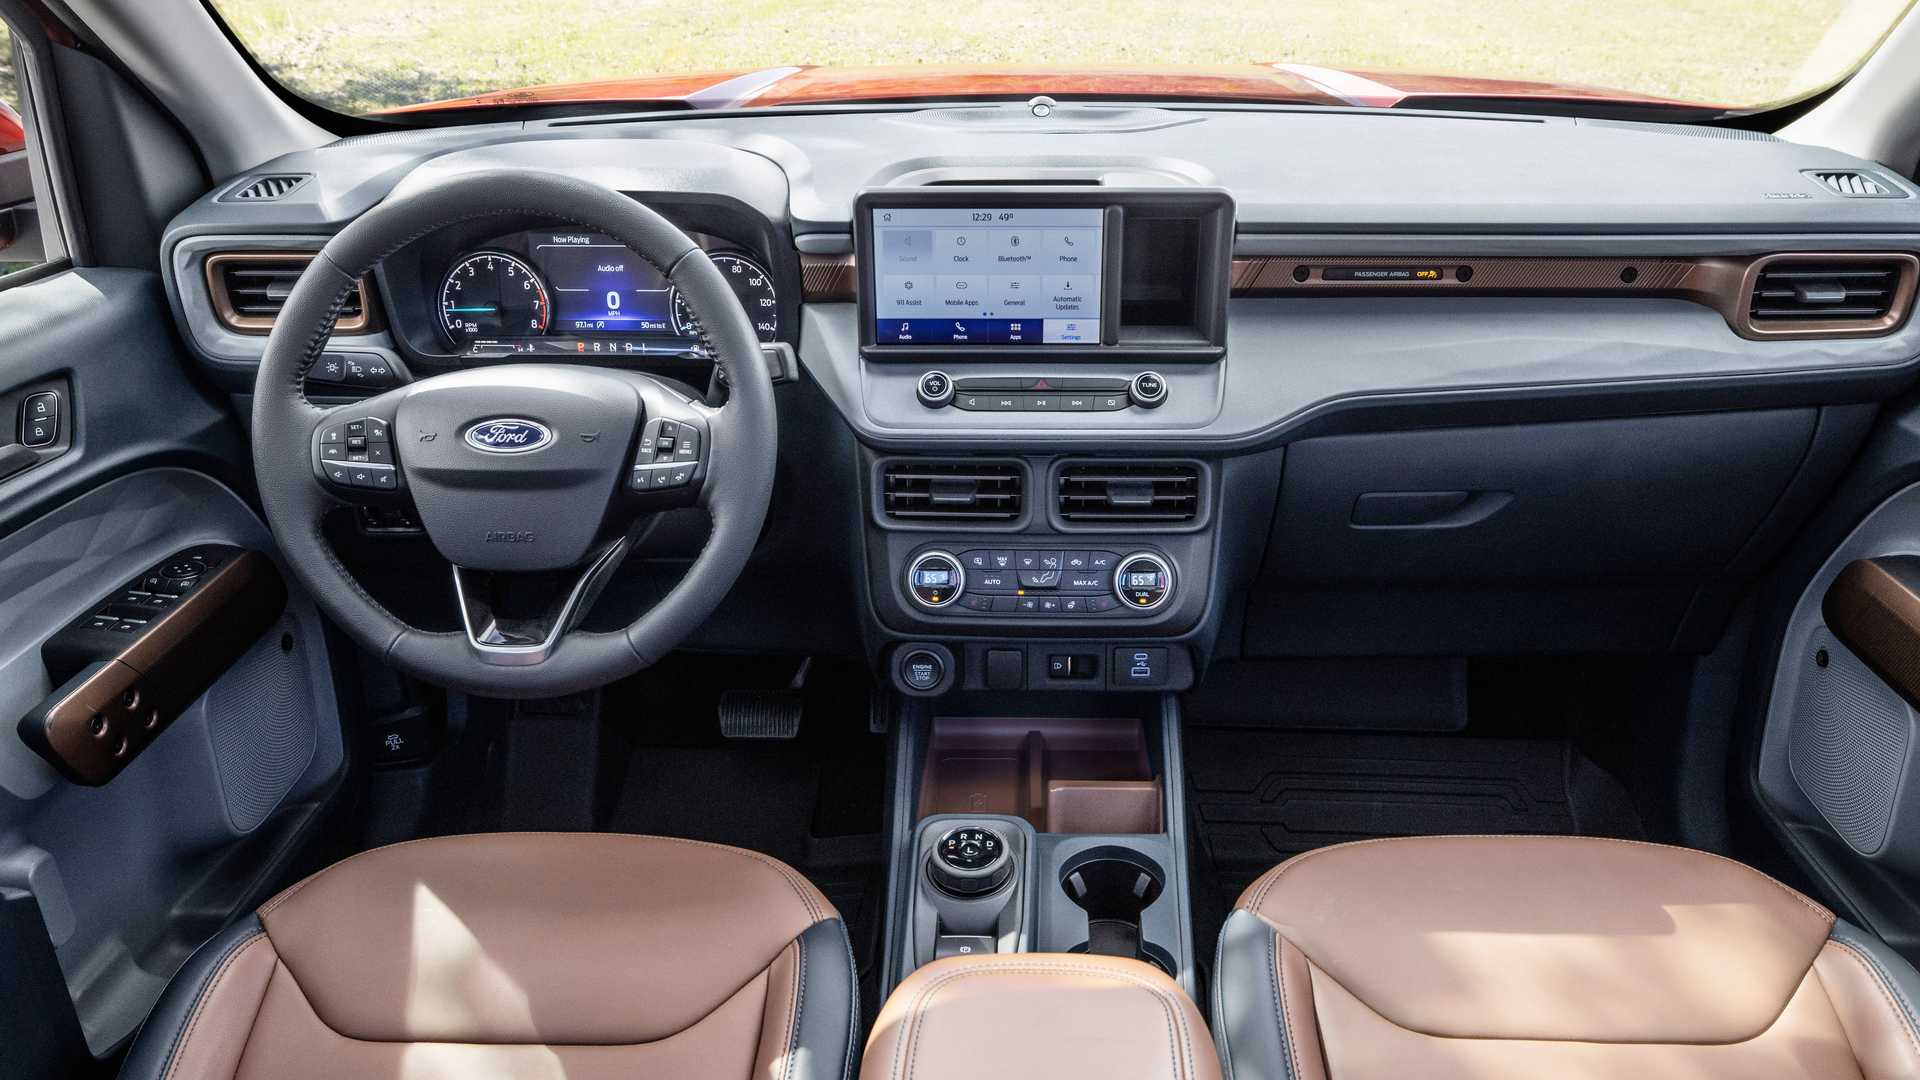 Ford показал свой самый экономичный пикап - 5 литров на 100 км